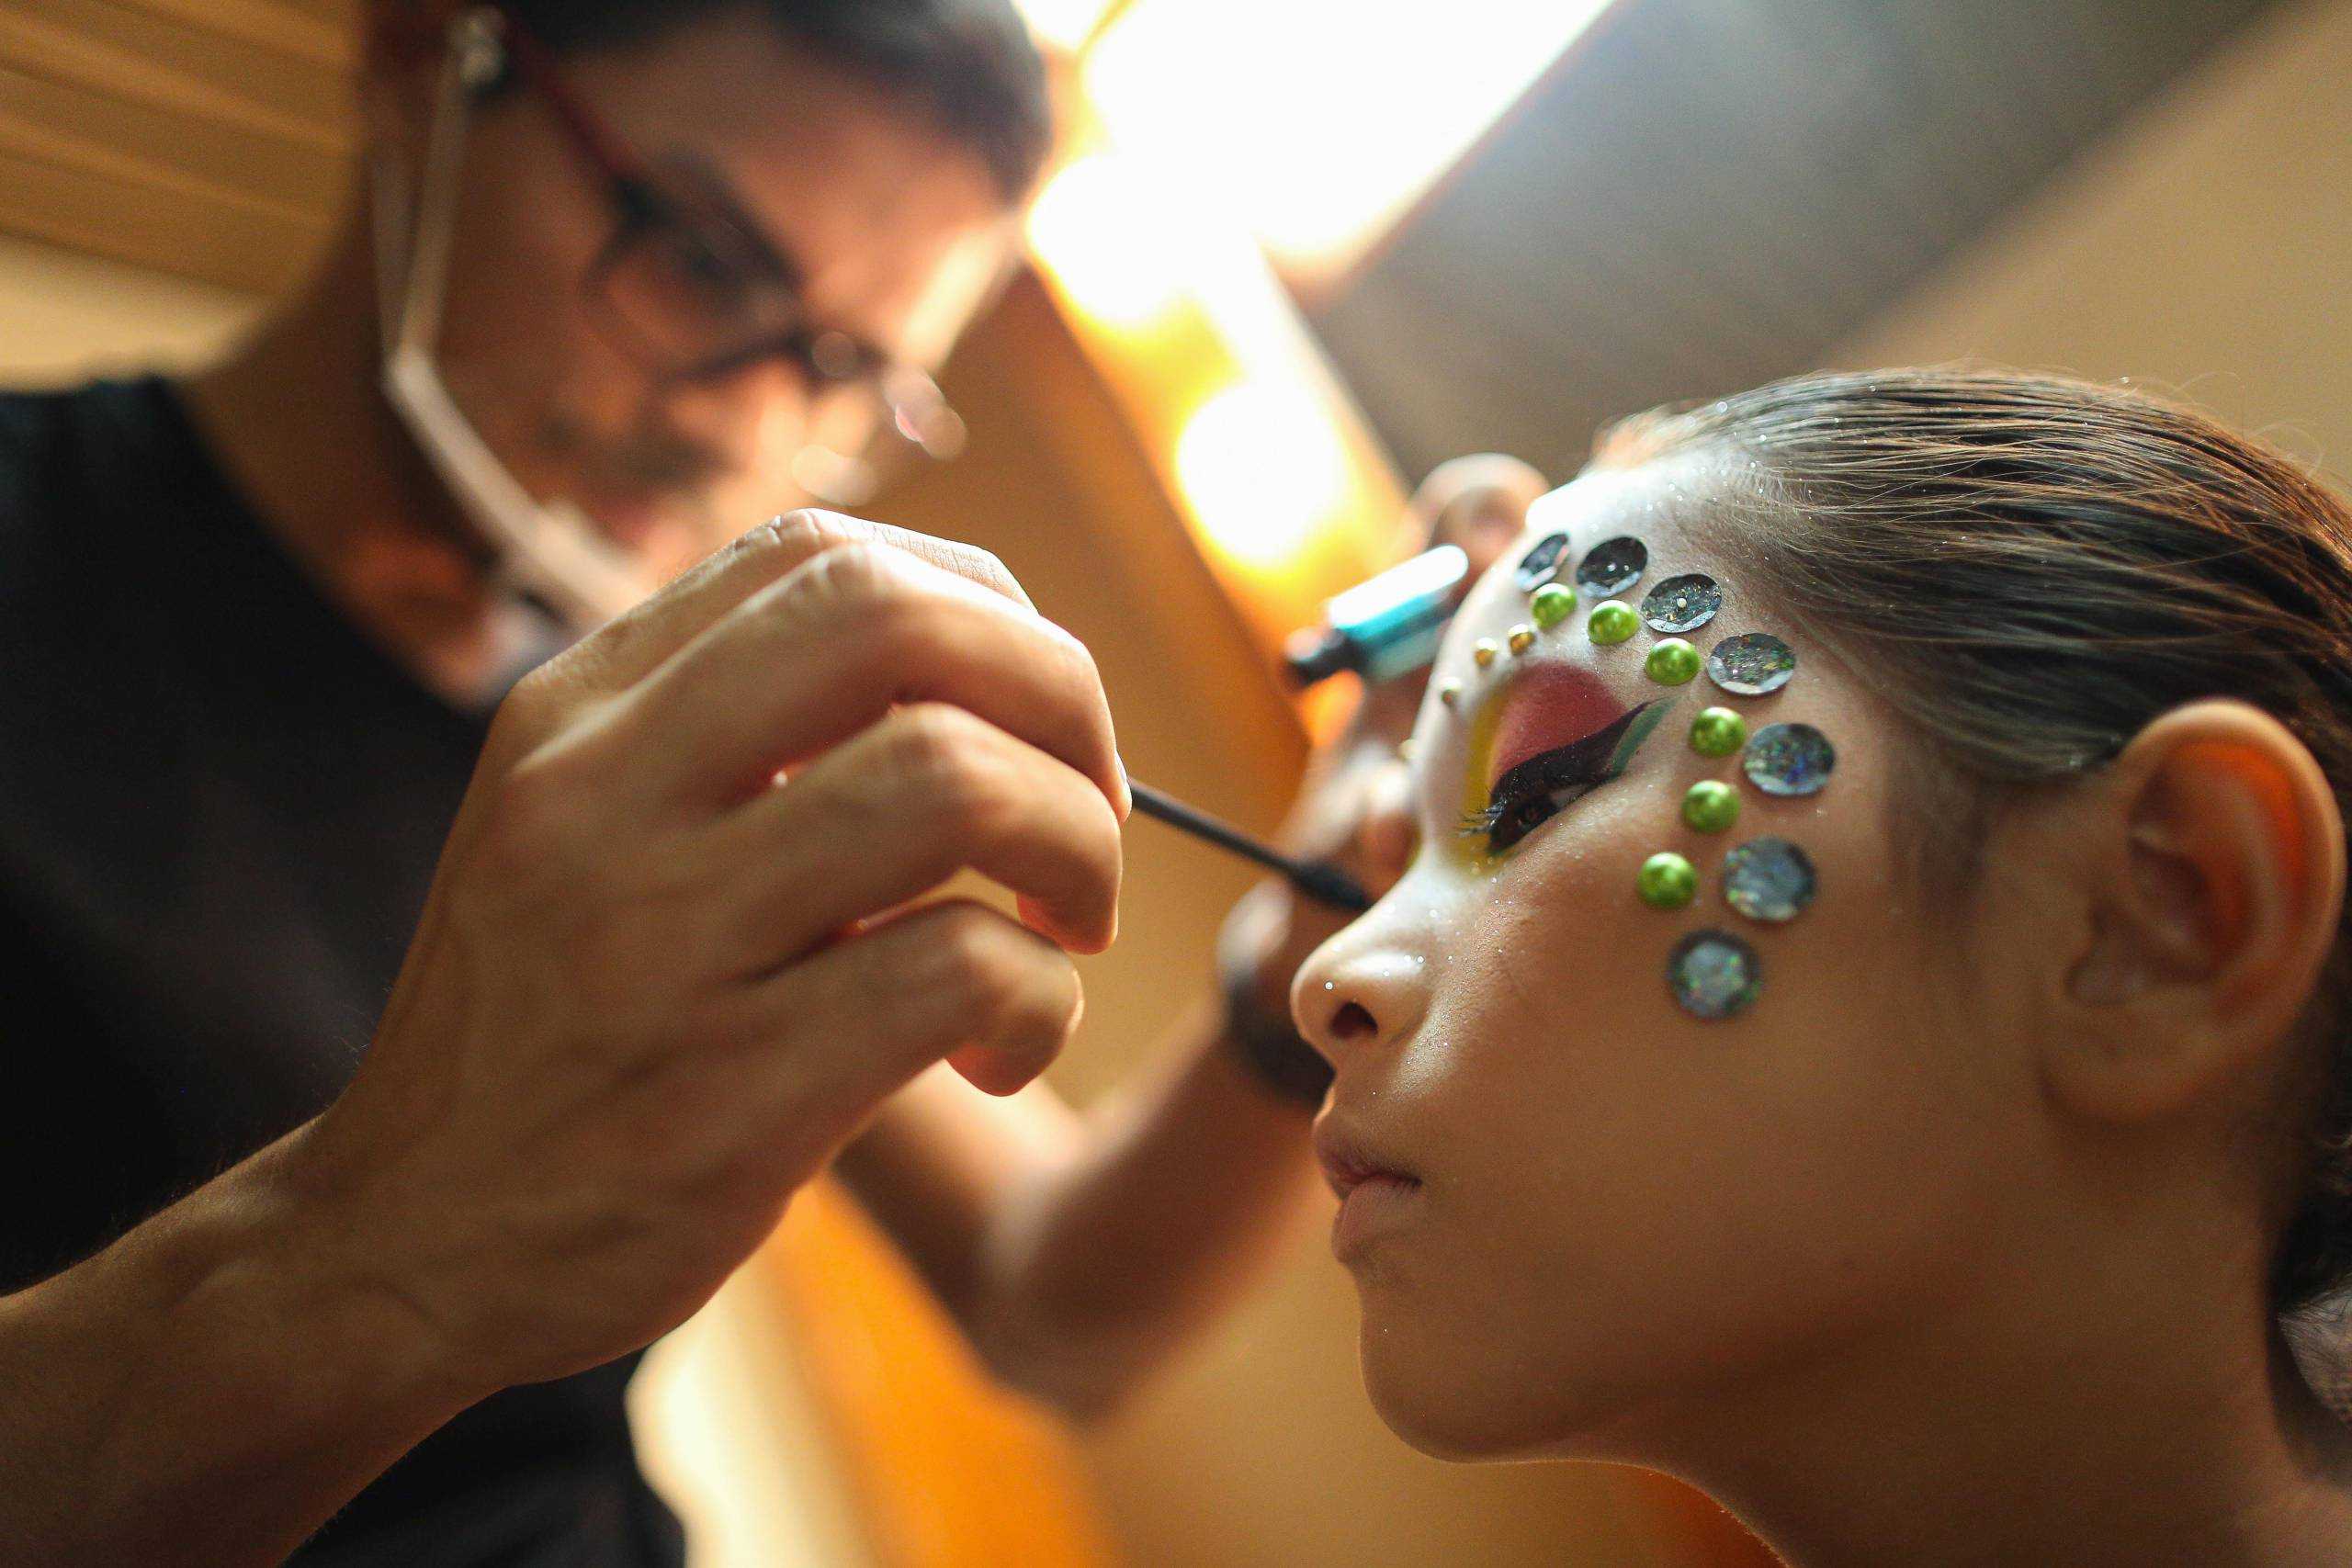 Oficinas de maquiagem estão com inscrições abertas em Marabá